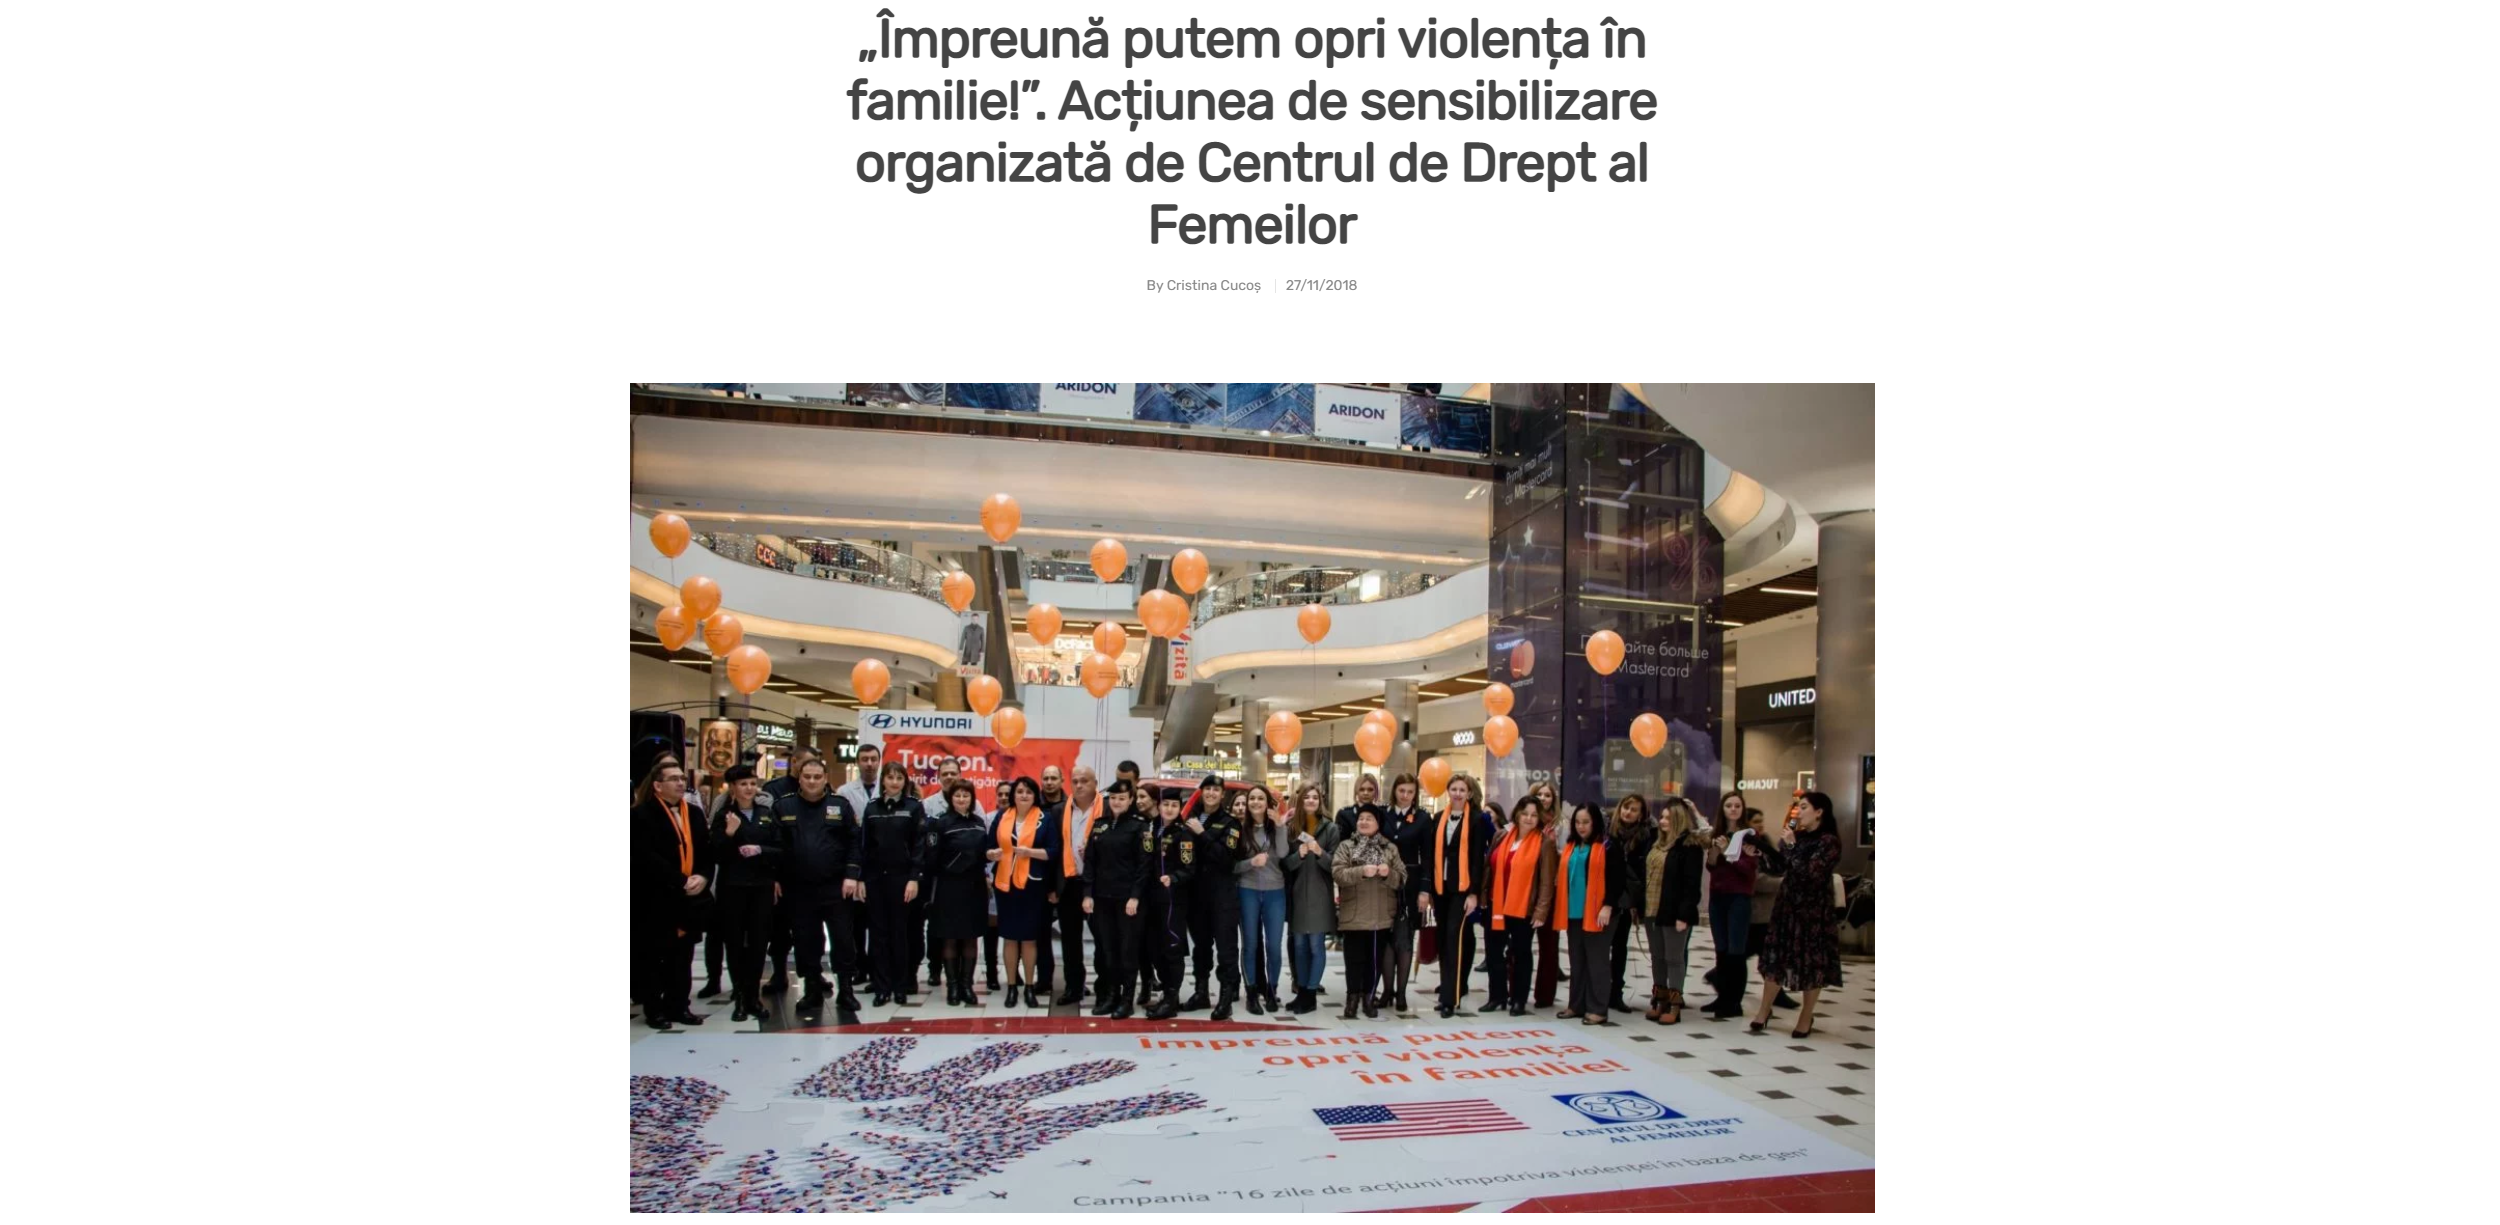 „Împreună putem opri violența în familie!”. Acțiunea de sensibilizare organizată de Centrul de Drept al Femeilor